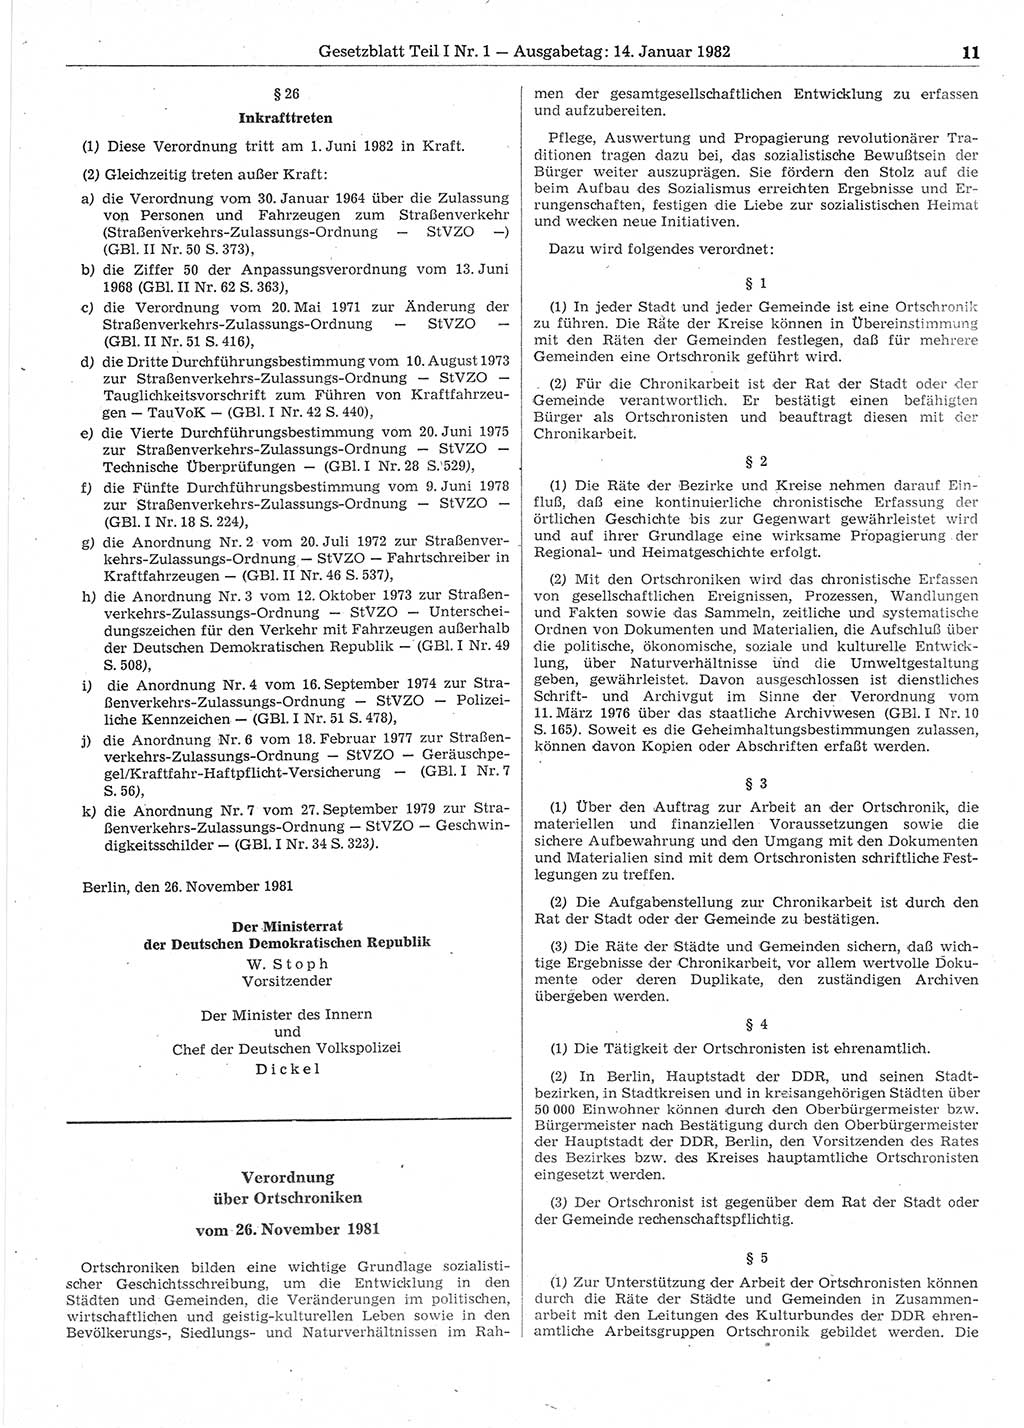 Gesetzblatt (GBl.) der Deutschen Demokratischen Republik (DDR) Teil Ⅰ 1982, Seite 11 (GBl. DDR Ⅰ 1982, S. 11)